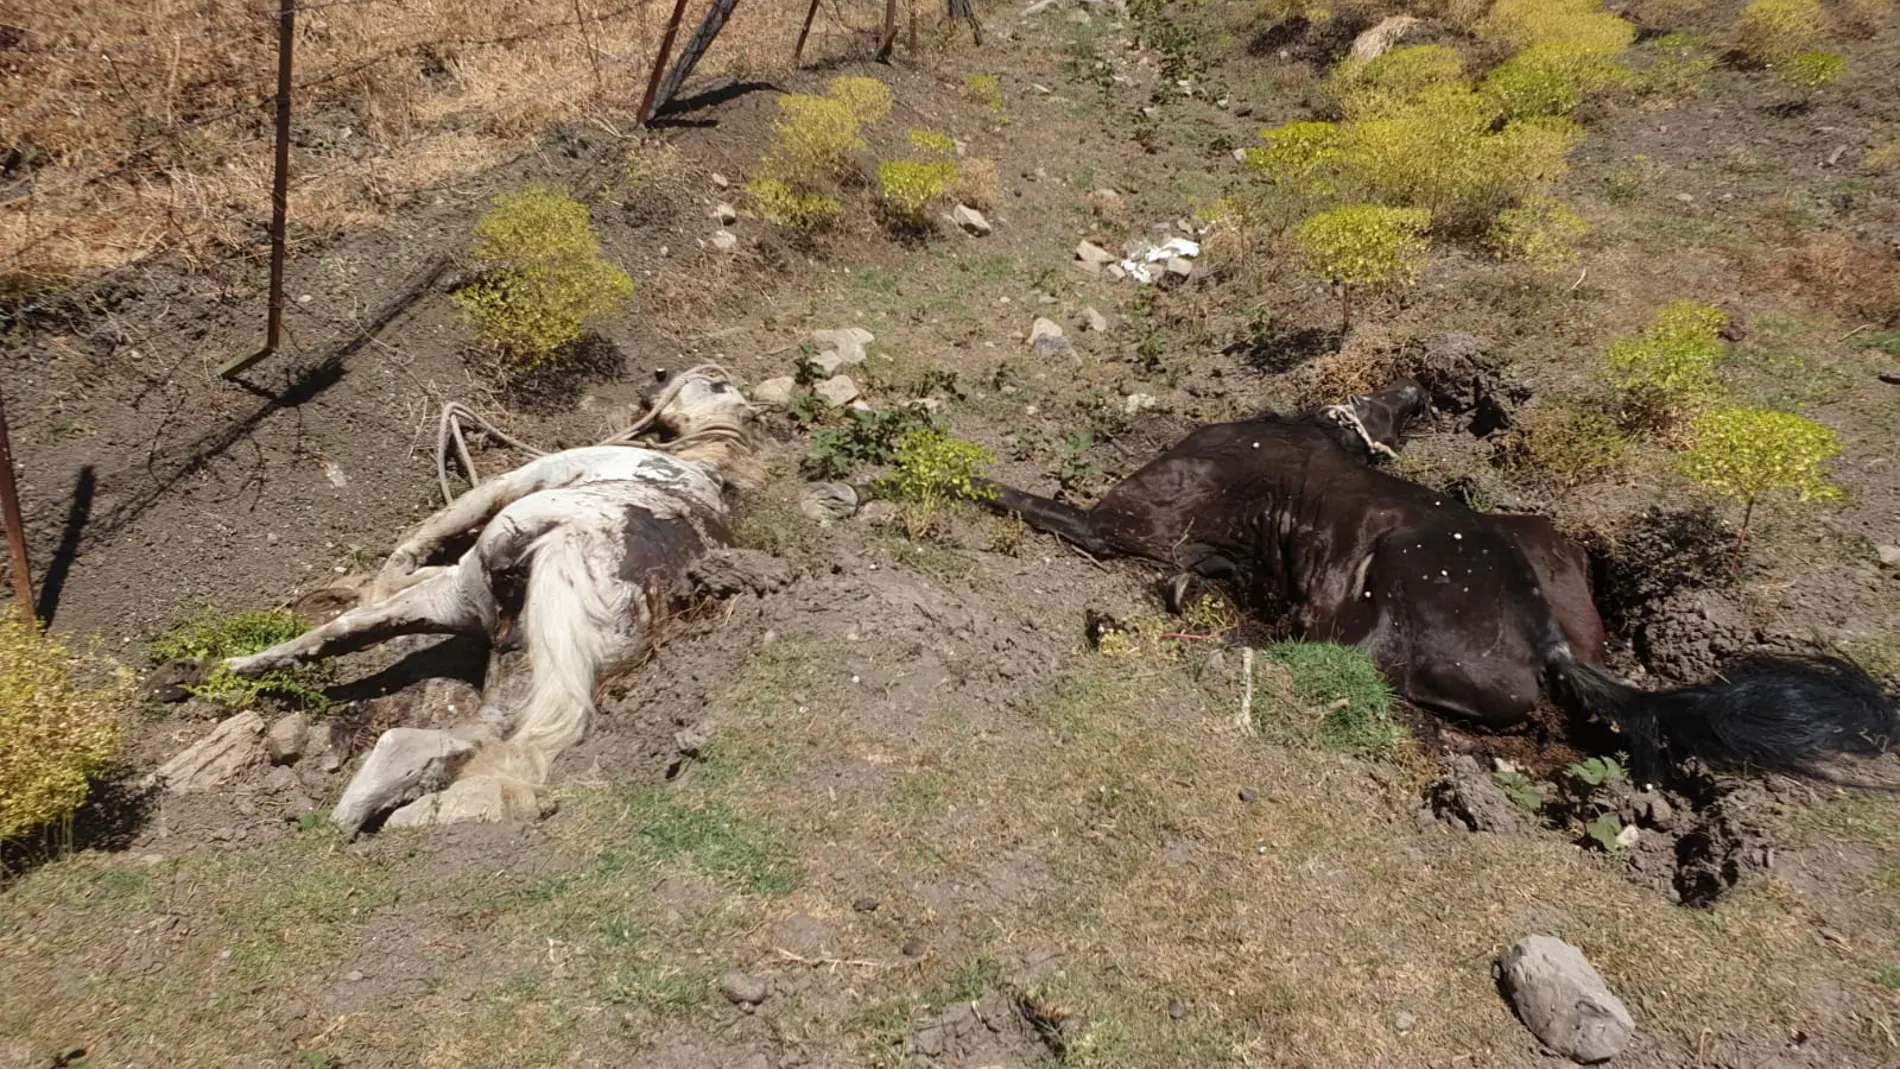 Dos de los caballos muertos en avanzado estado de descomposición